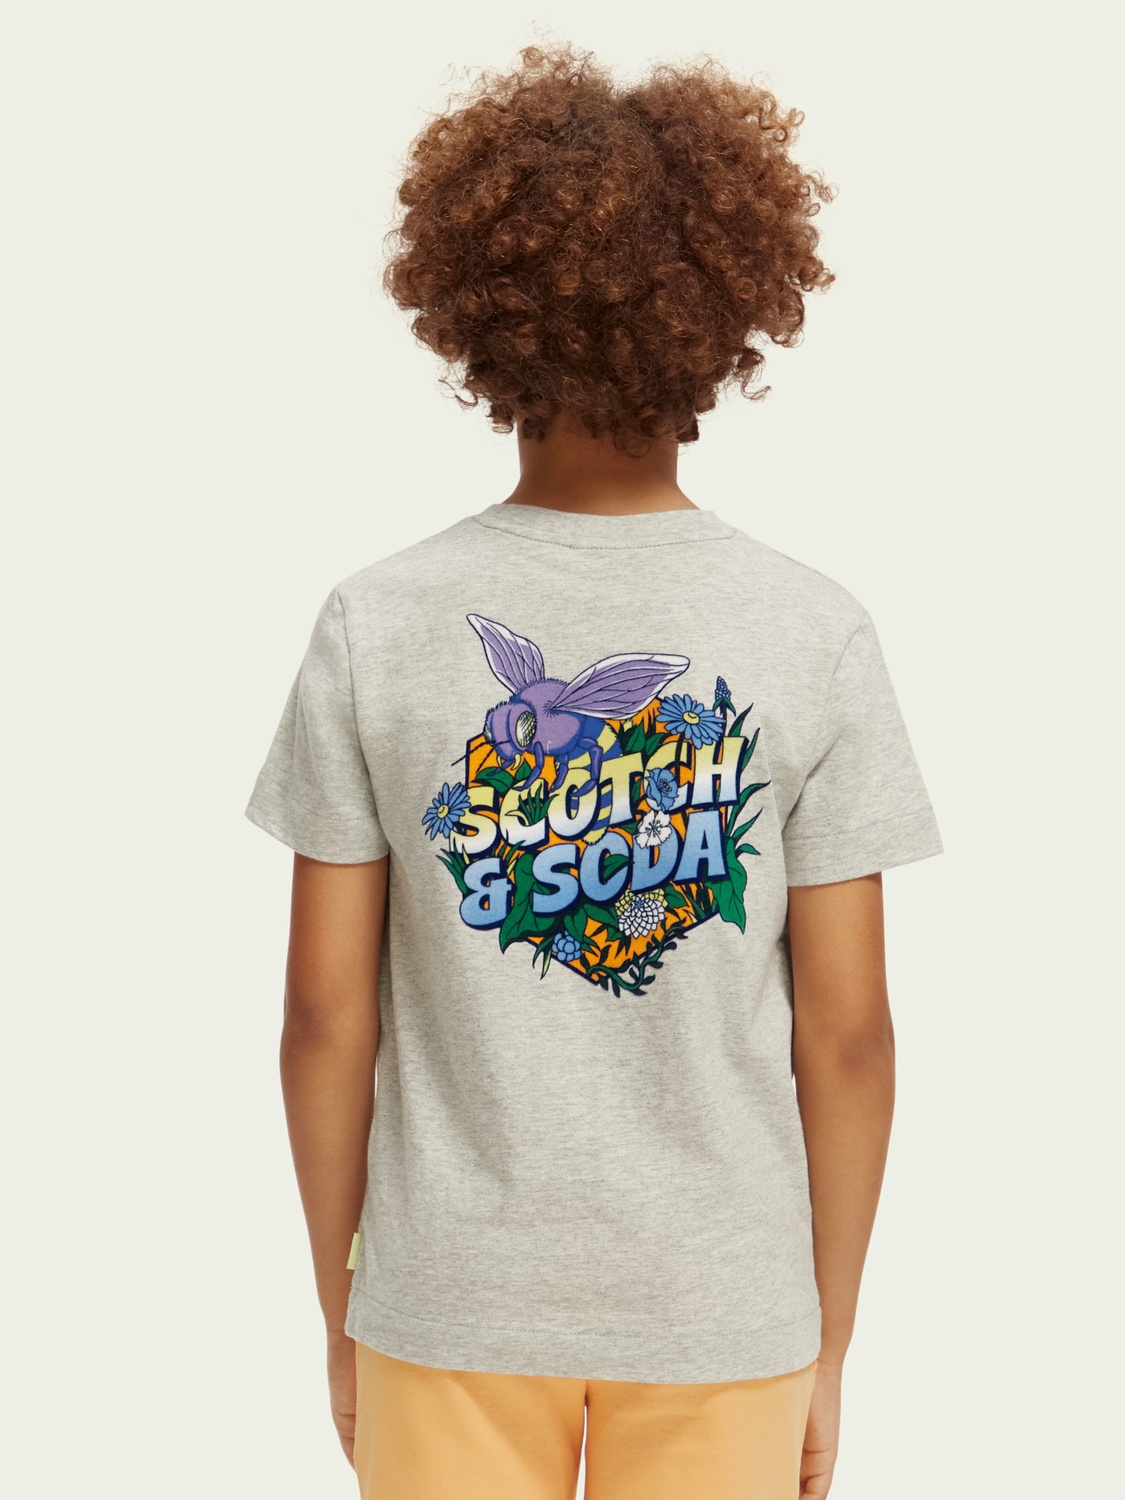 Scotch & Soda Boys T-Shirt_Grey 170558-0606